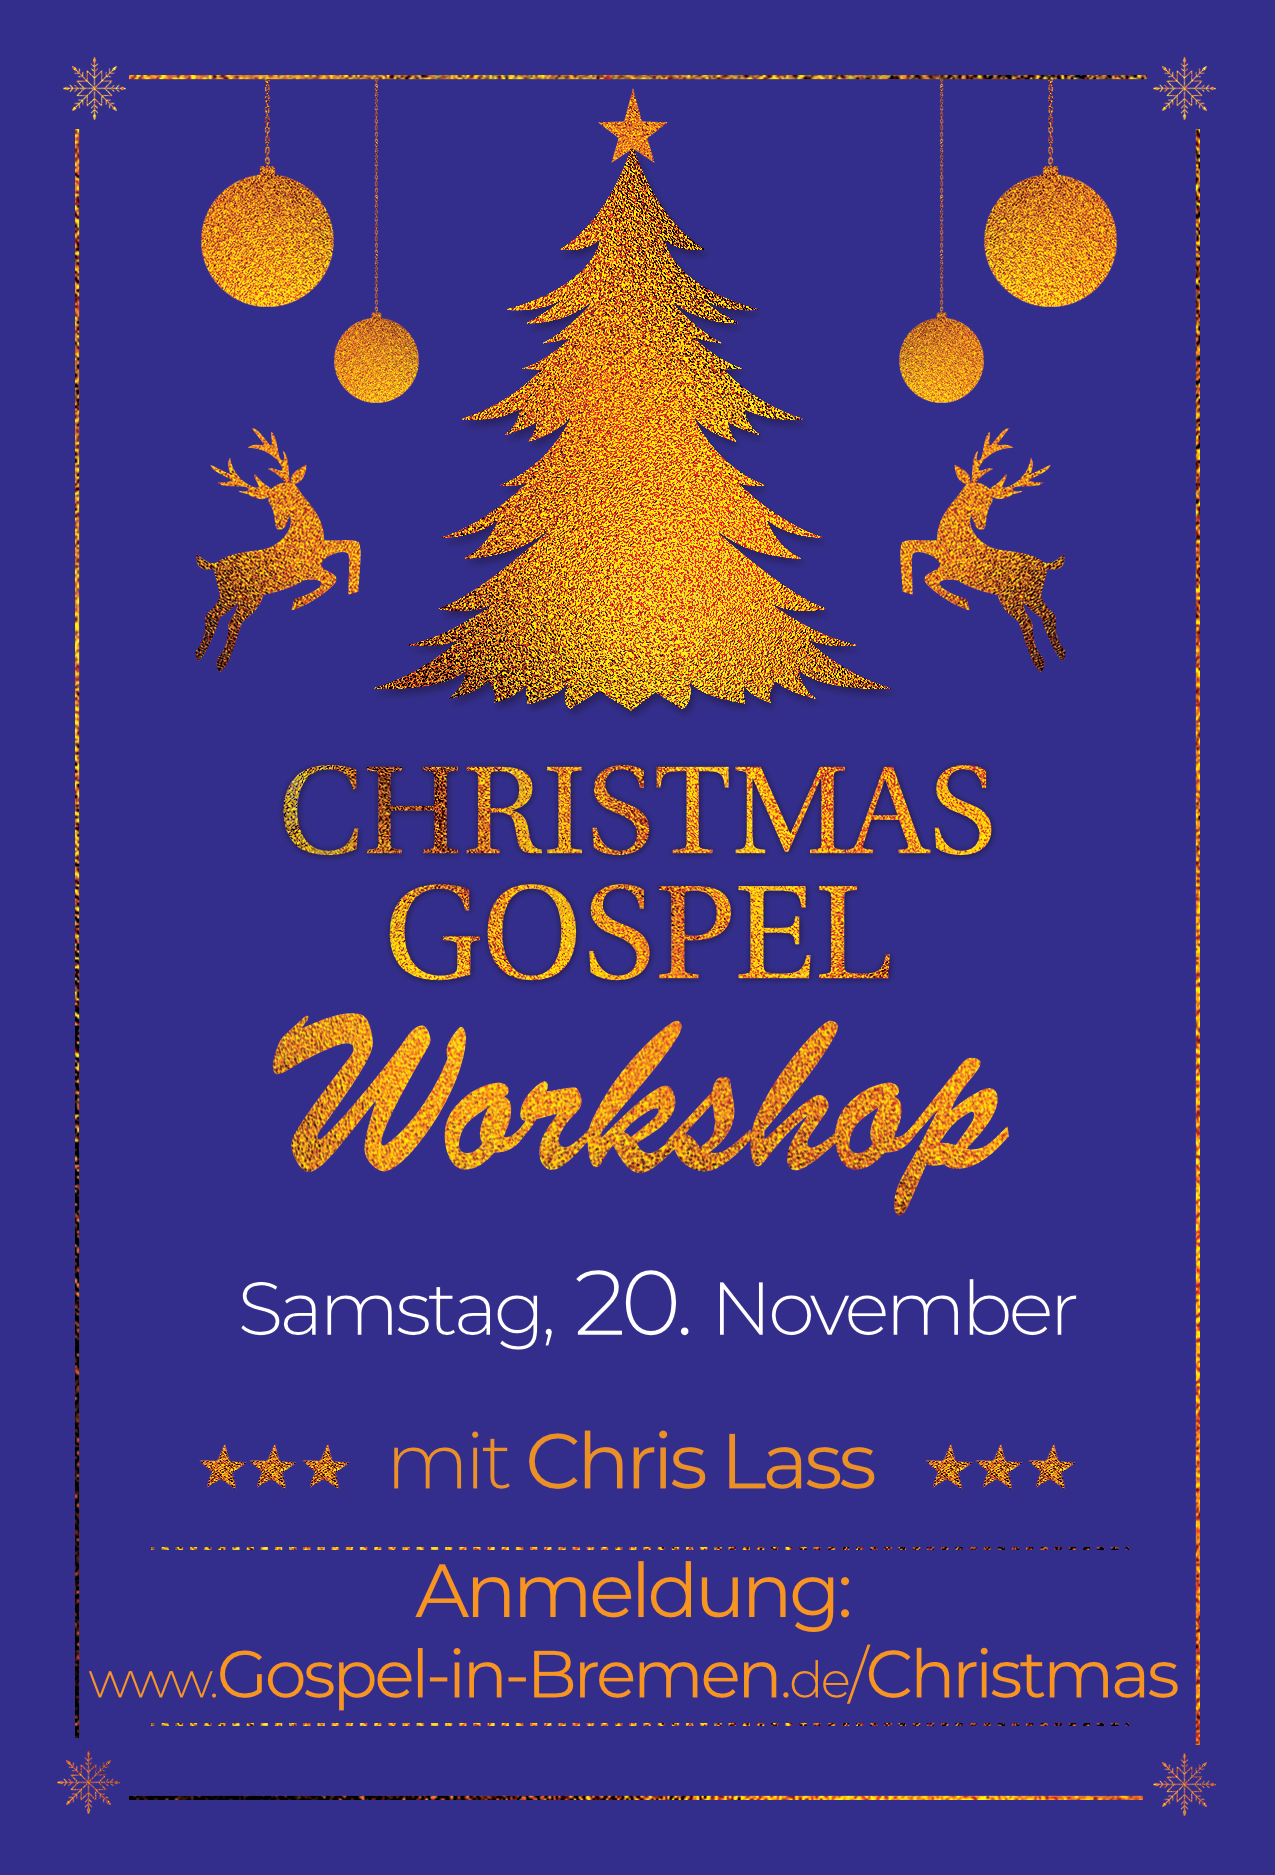 Christmas Gospel Day 2021